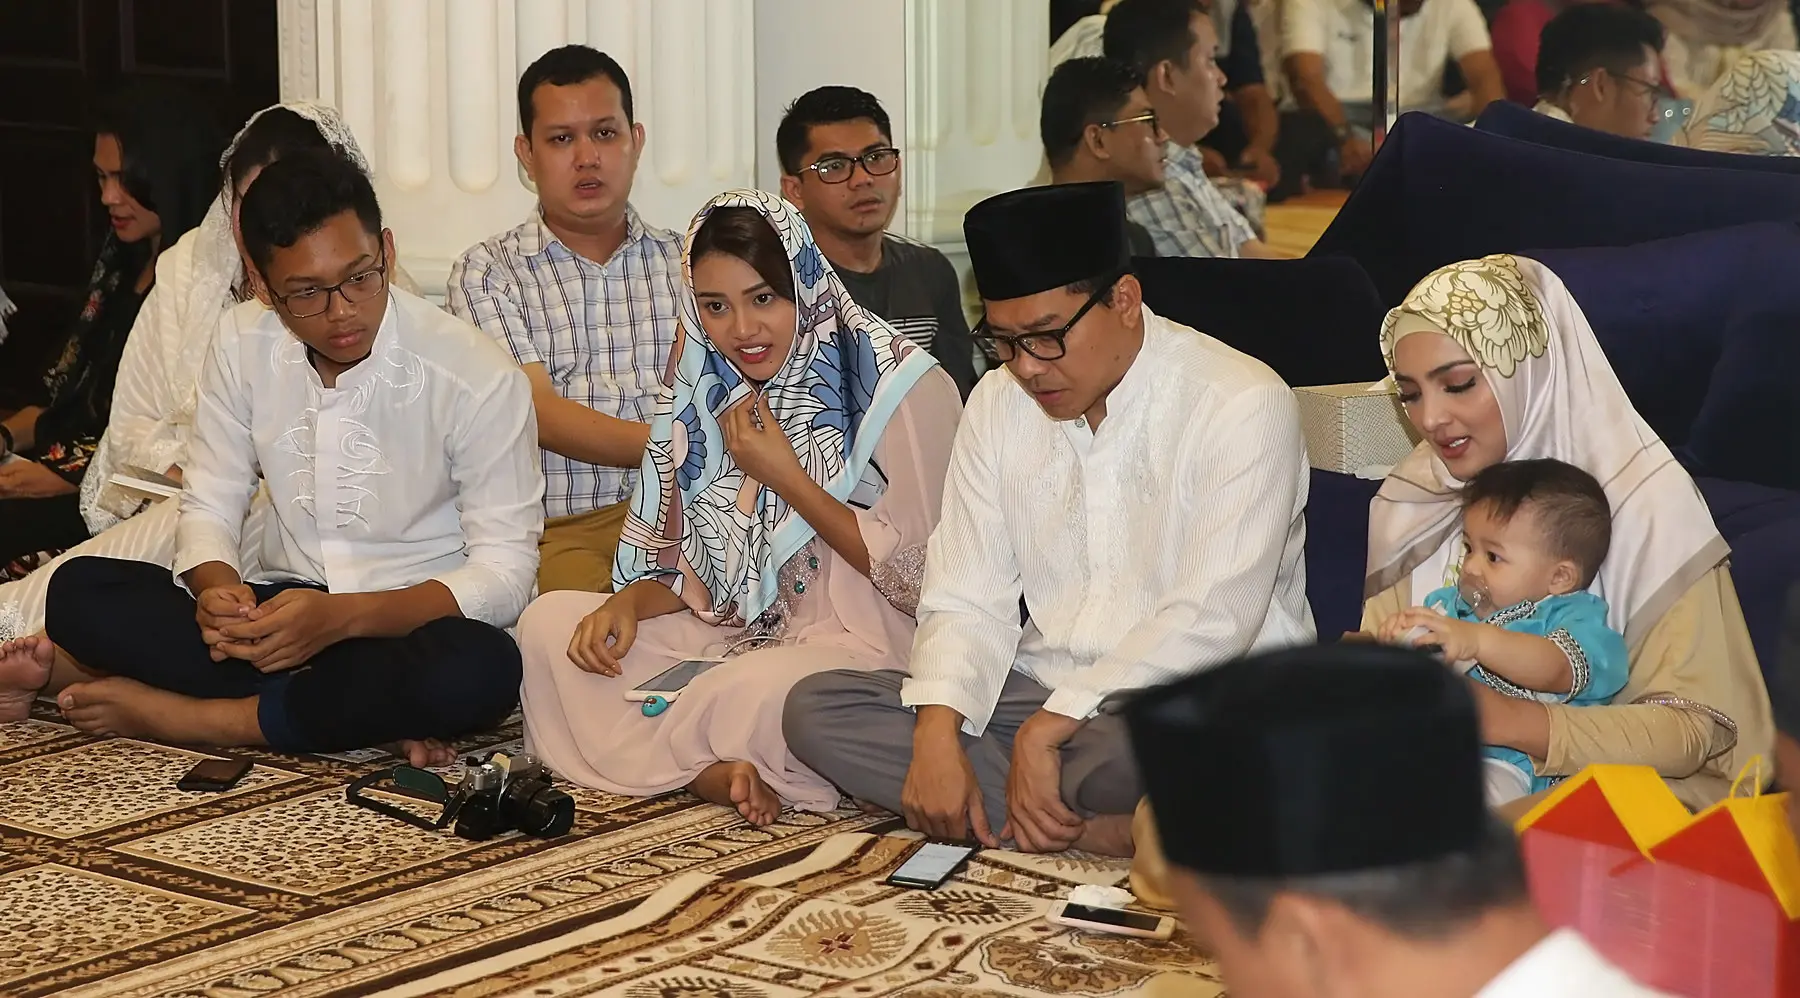 Ashanty, Anang Hermansyah, Aurel dan Azriel di acara pengajian mendoakan alm. Ibunda Ashanty. (Bambang E. Ros/bintang.com)